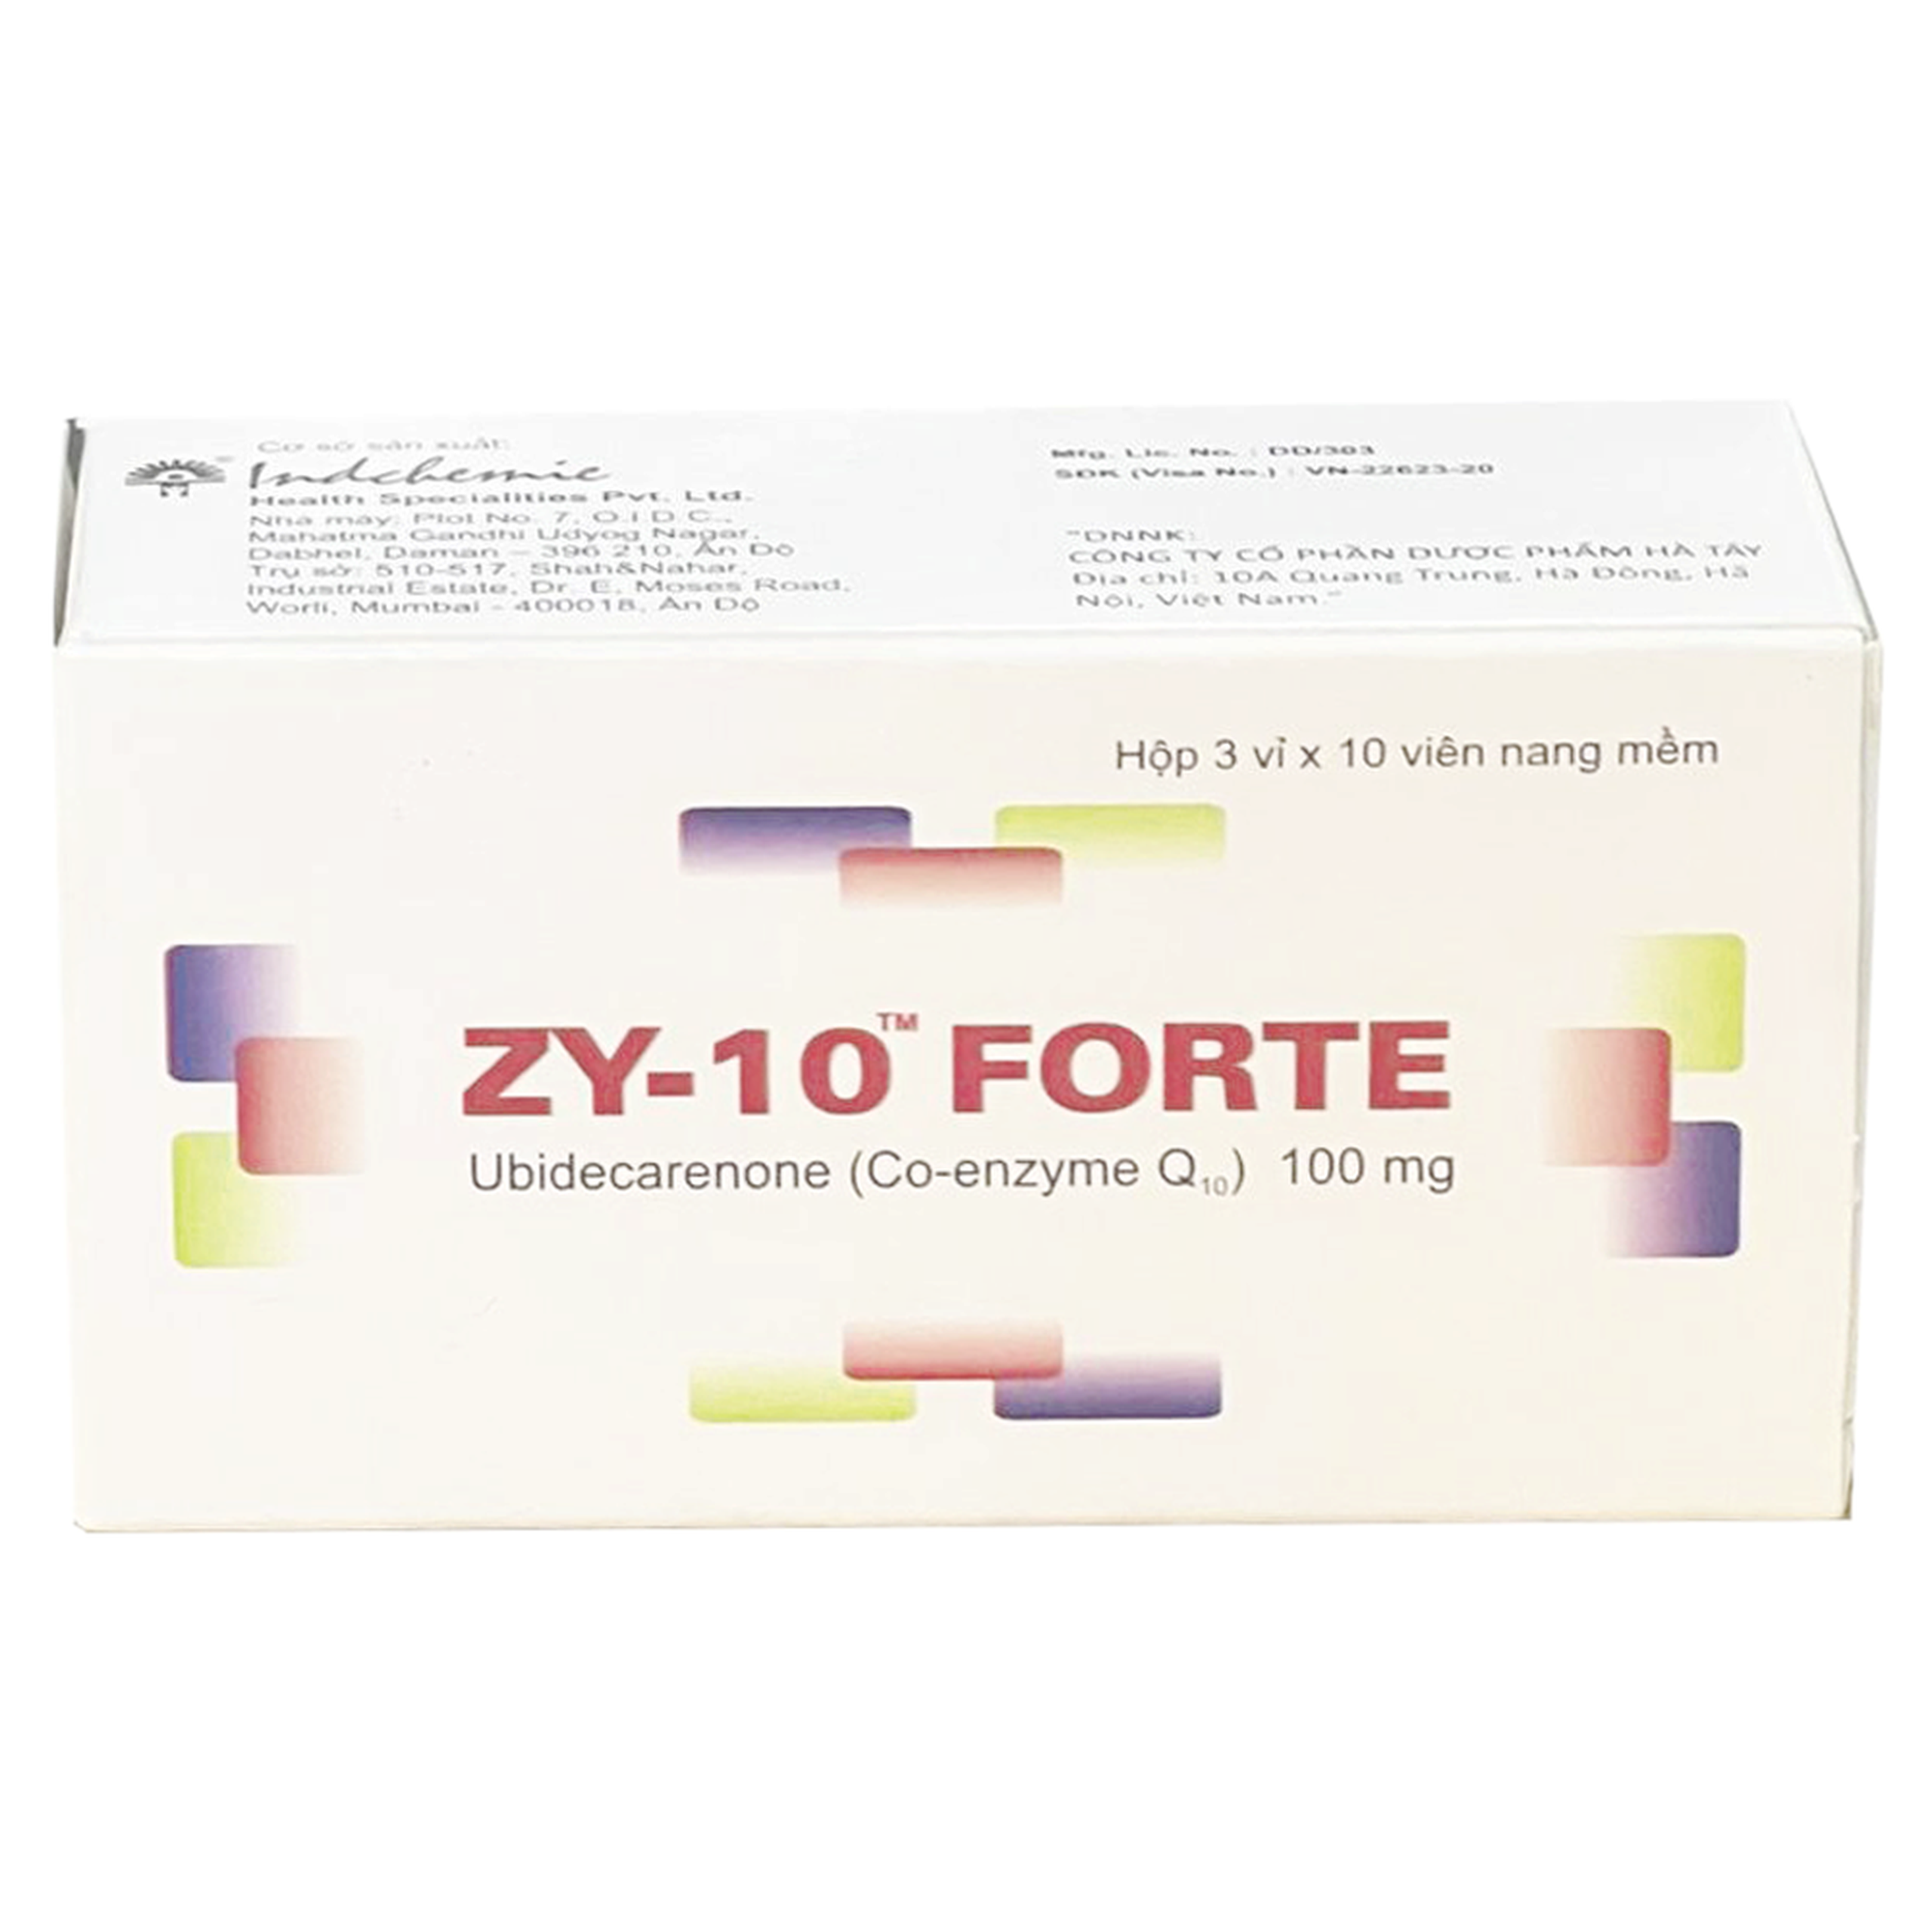 Thuốc Zy-10 Forte 100mg Dược Hà Tây điều trị bệnh suy tim xung huyết, thiếu hụt coenzym Q10 (3 vỉ x 10 viên)